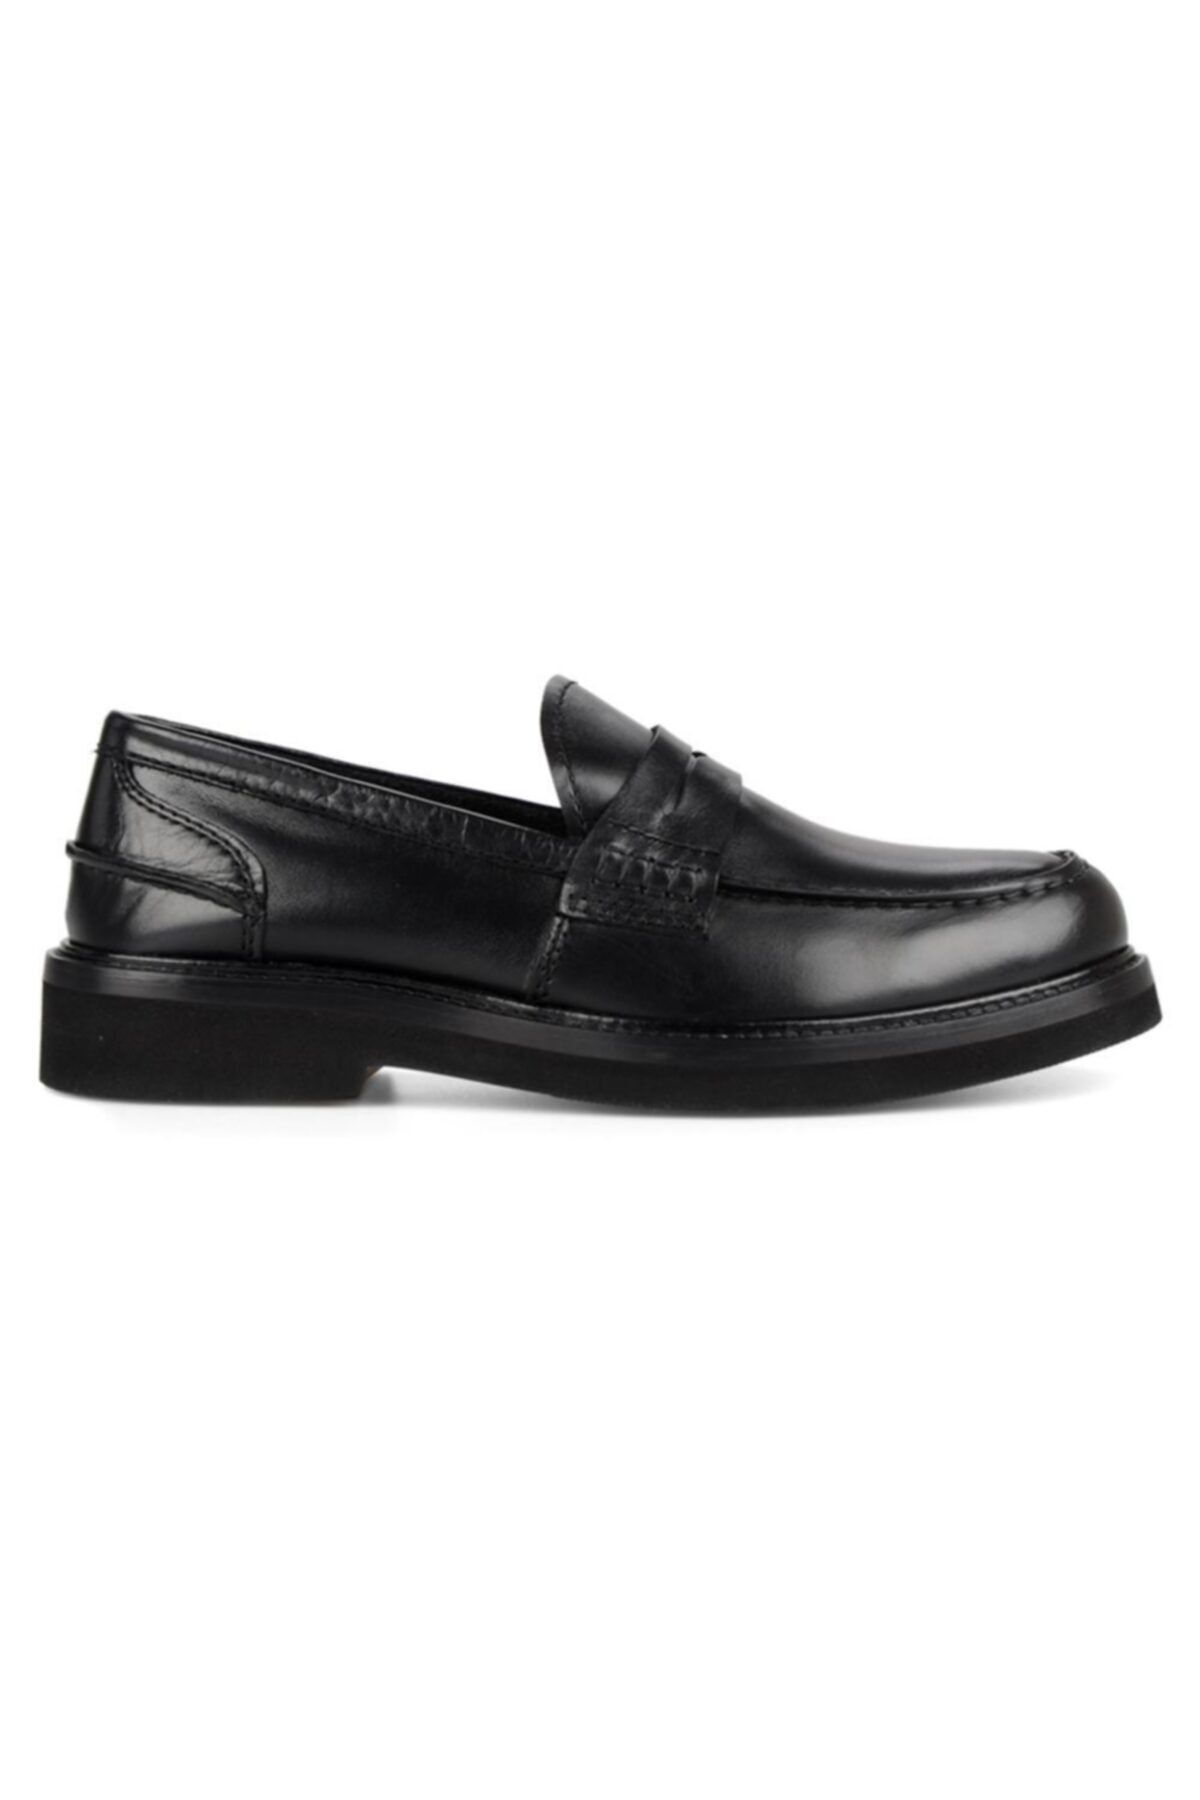 FootCourt Siyah Bantlı Erkek Deri Loafer Ayakkabı